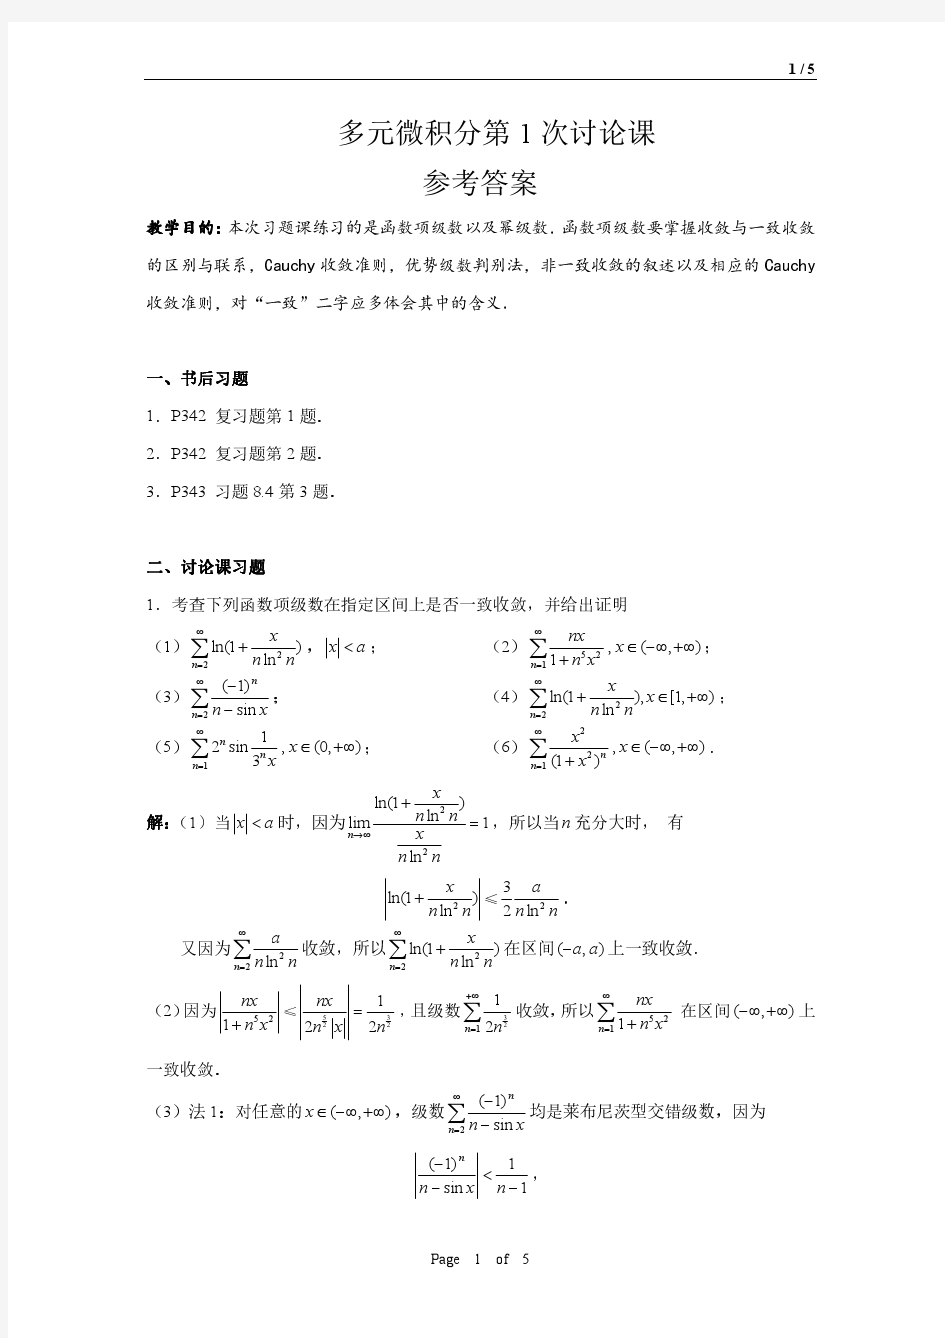 多元微积分第1次习题课(函数项级数以及幂级数)答案(2015)Cauchy 收敛准则,优势级数判别法